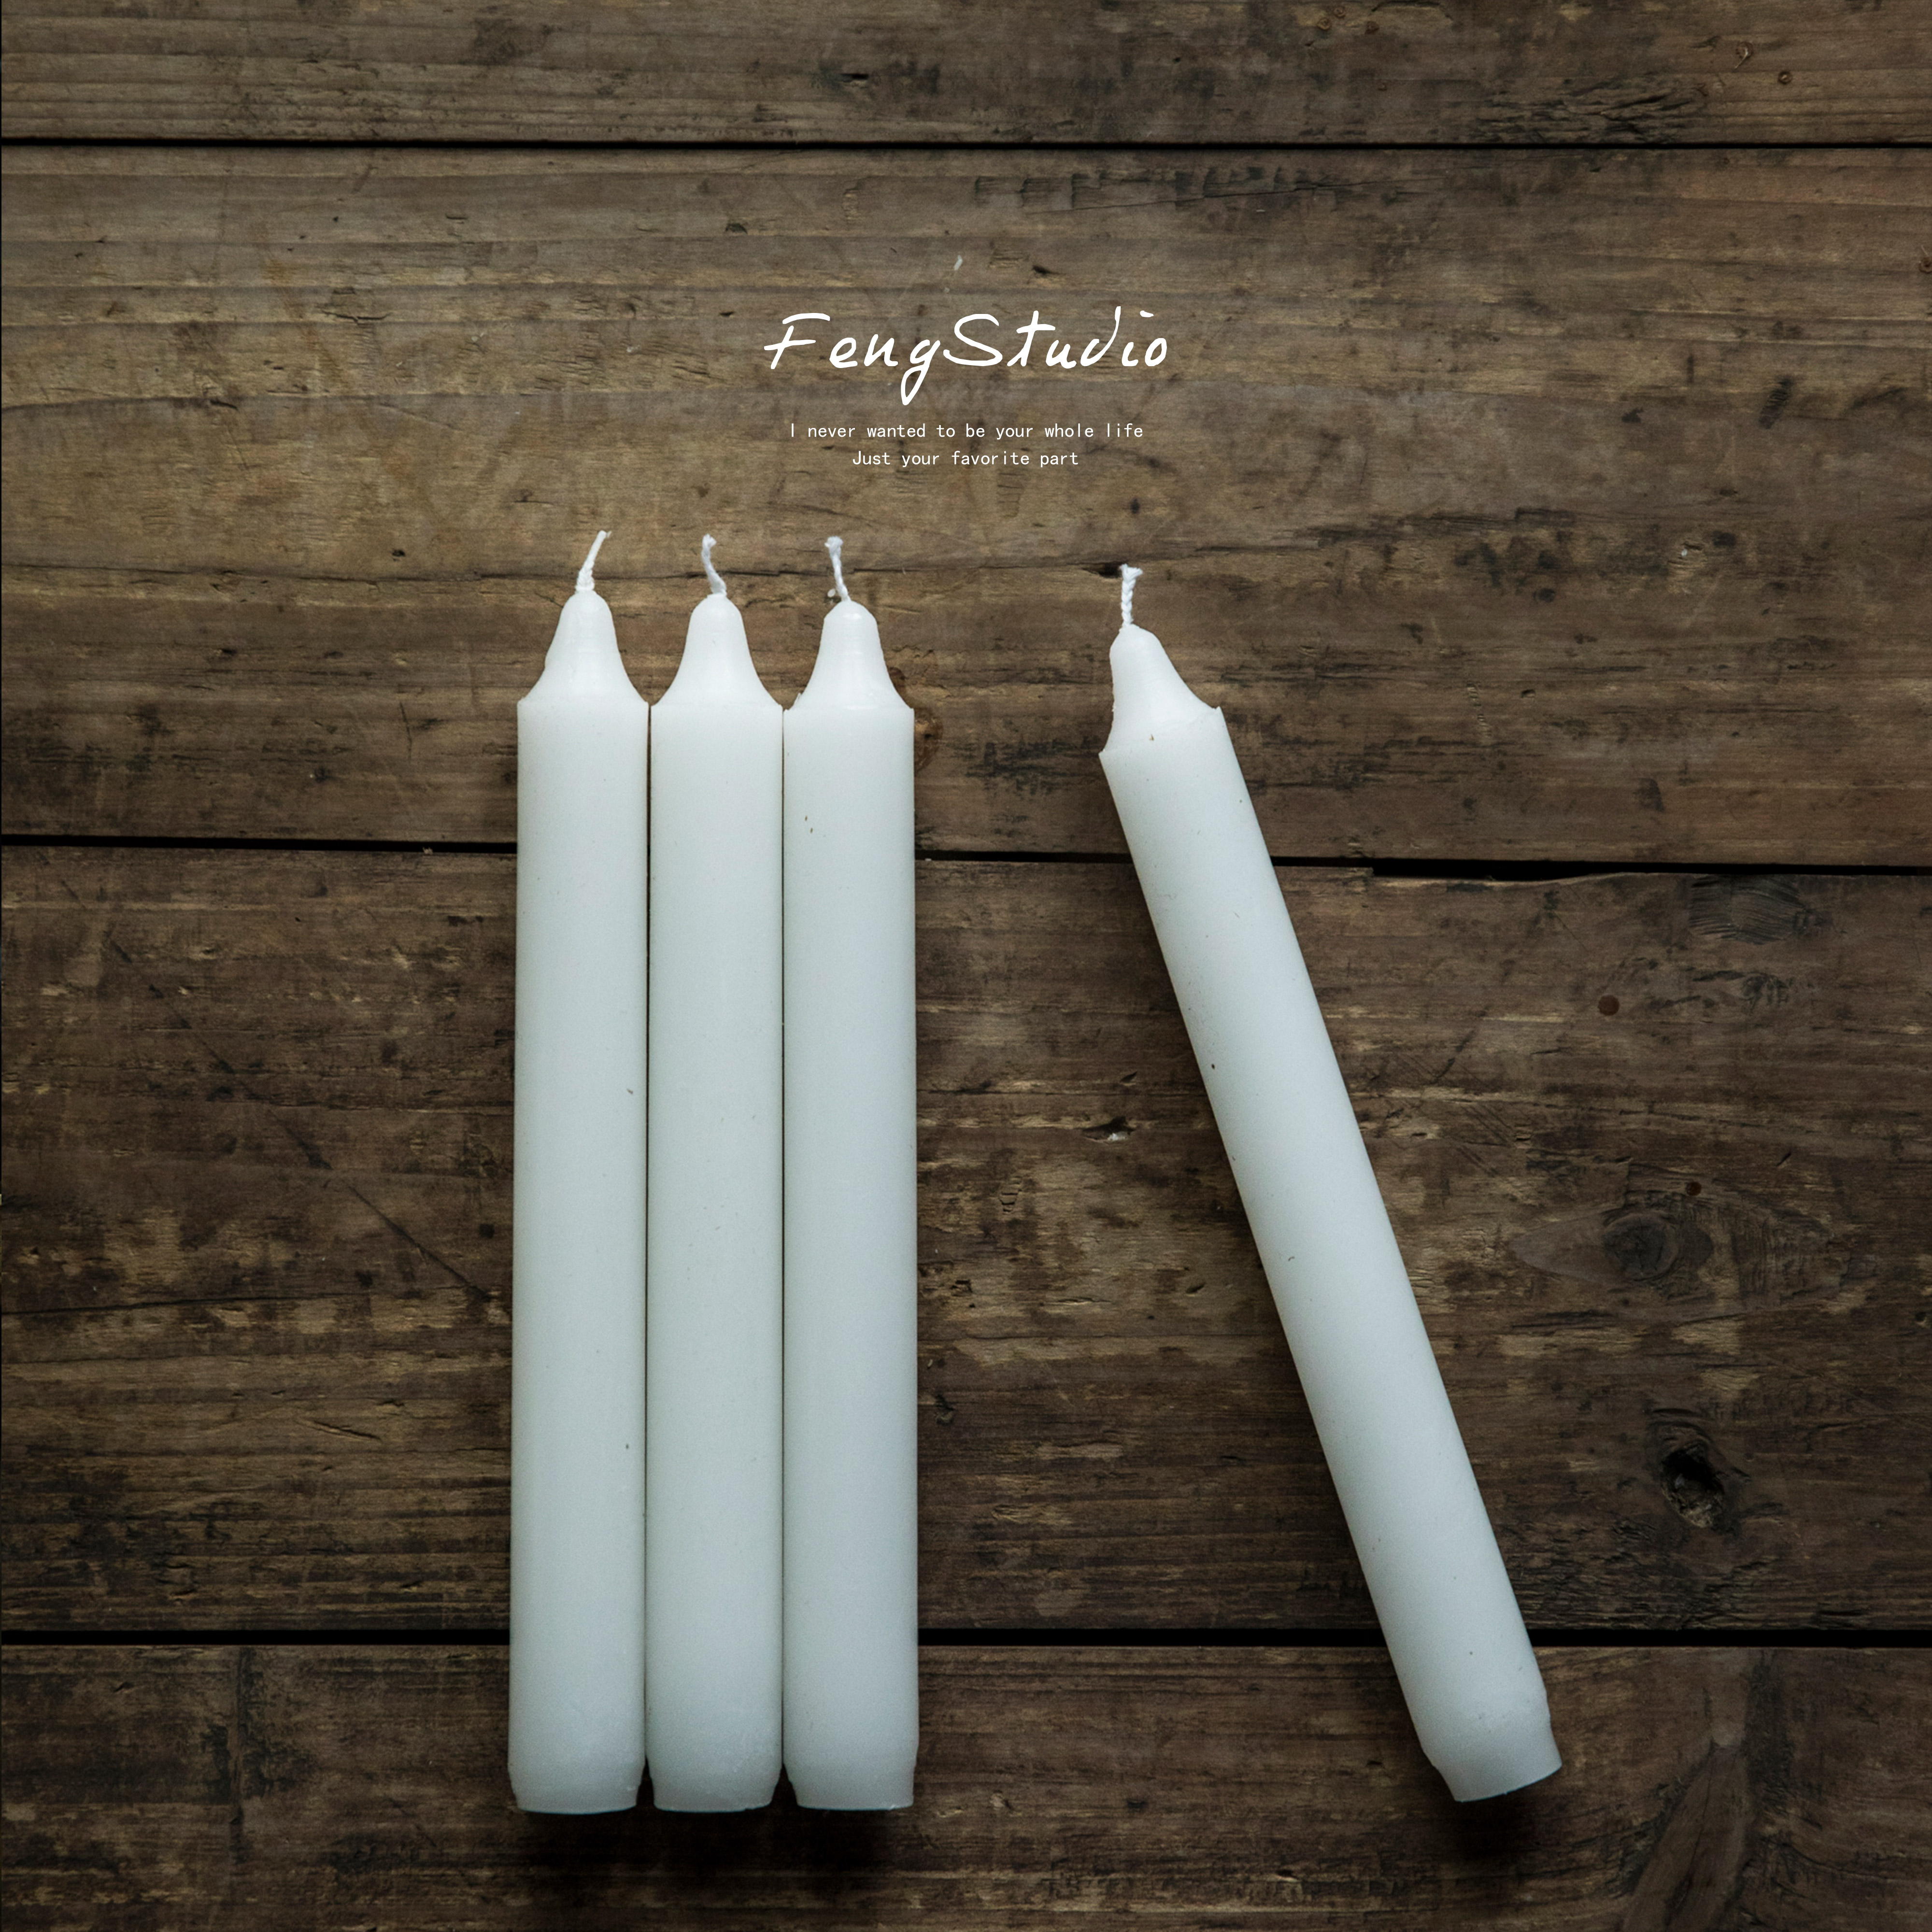 。FENG STUDIO经典烛台搭配白色长蜡烛拍照摄影背景道具